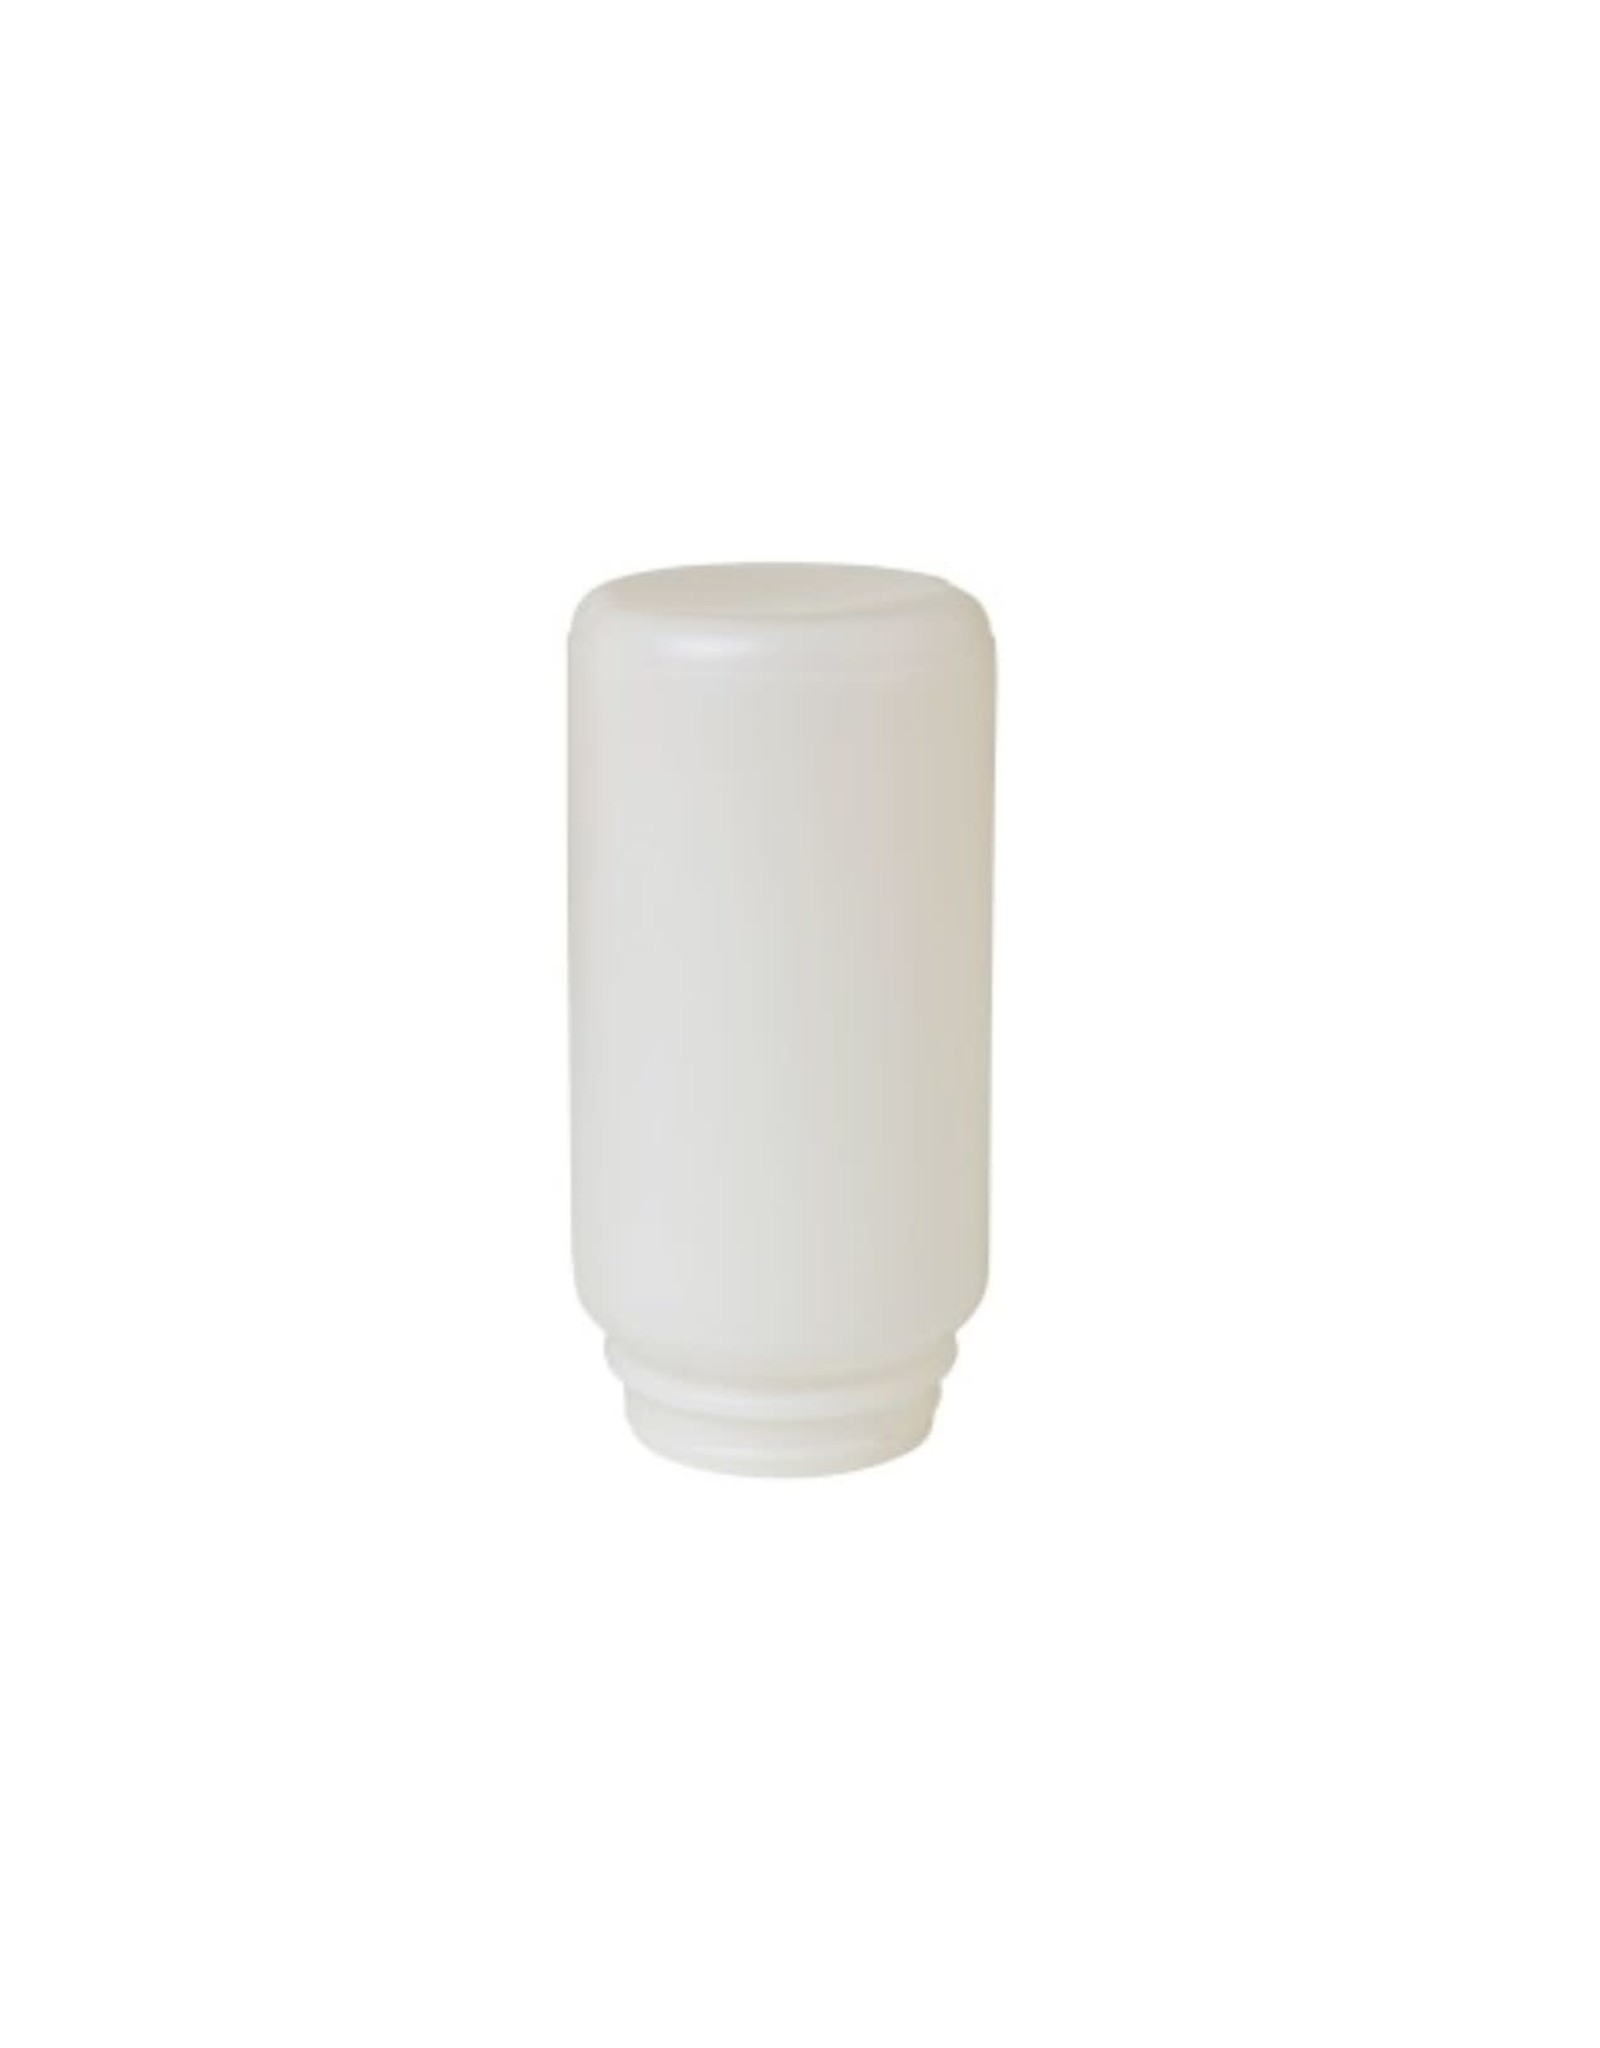 MILLER MFG CO INC Mason Jar Chick Waterer / Feeder Plastic Screw-on Quart  MILLER 690 now 171041